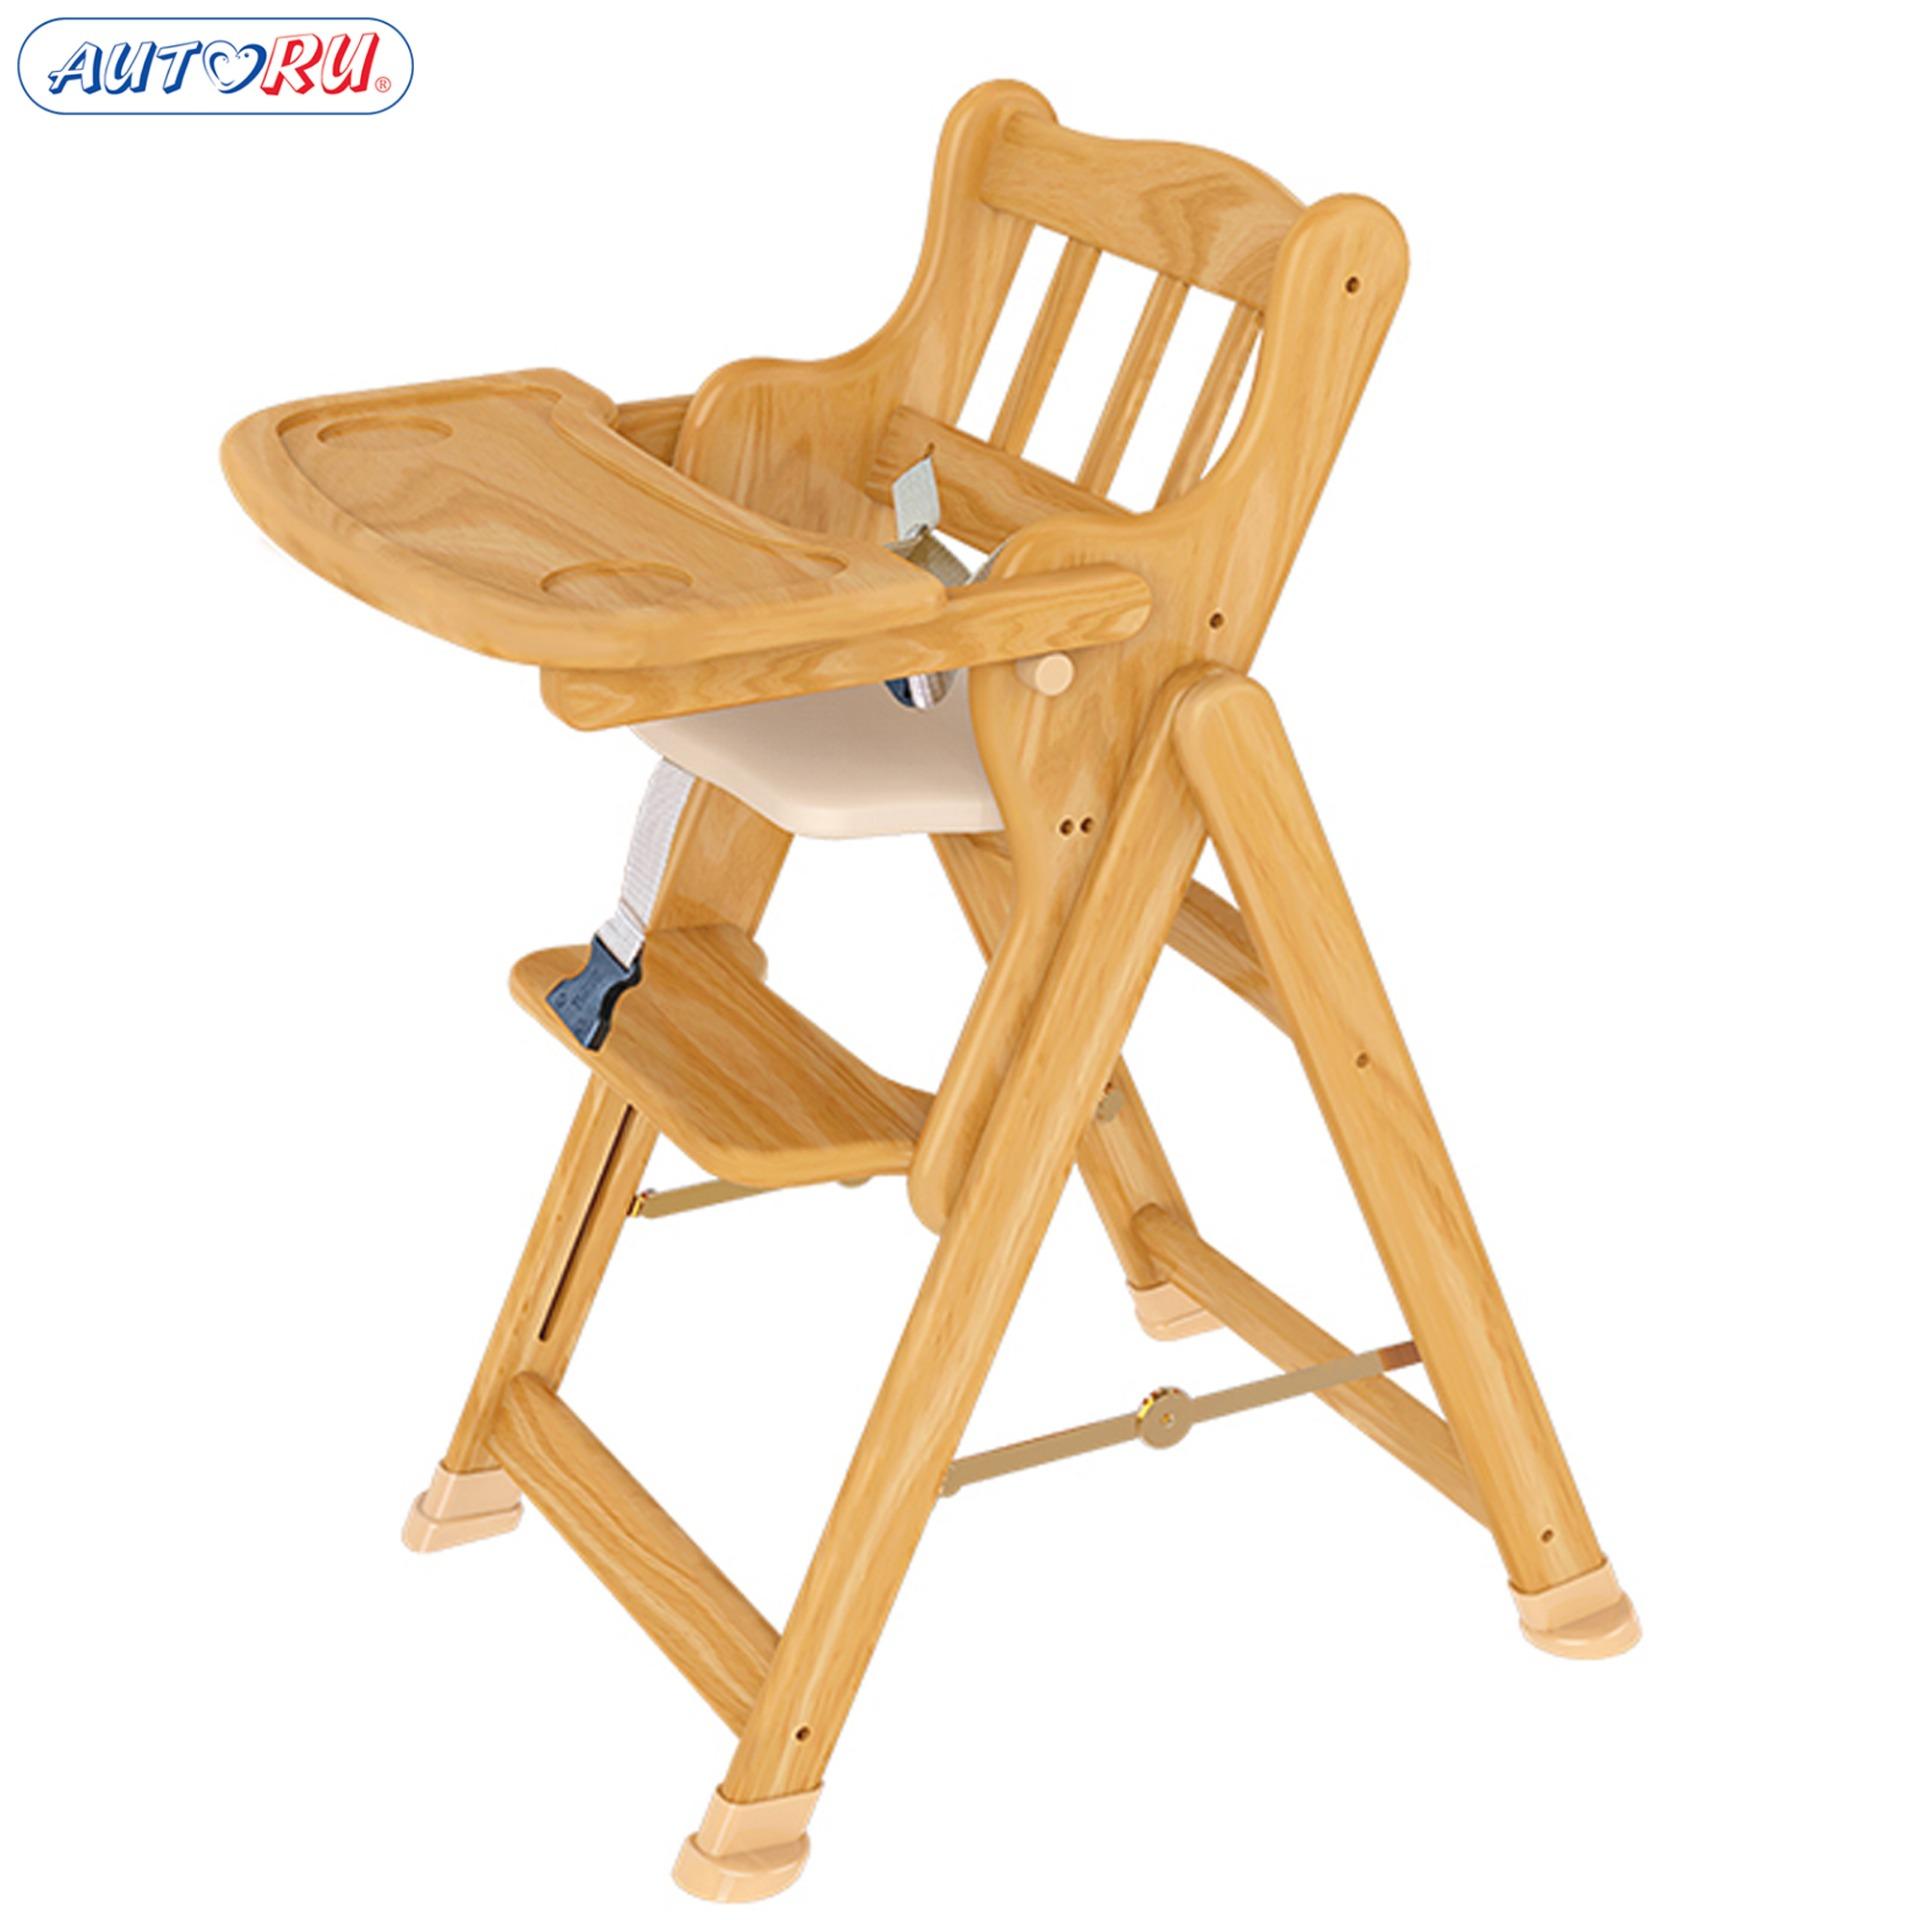 Ghế gỗ cao cấp AUTORU cho bé - Điều chỉnh được 4 độ cao - AUHC01